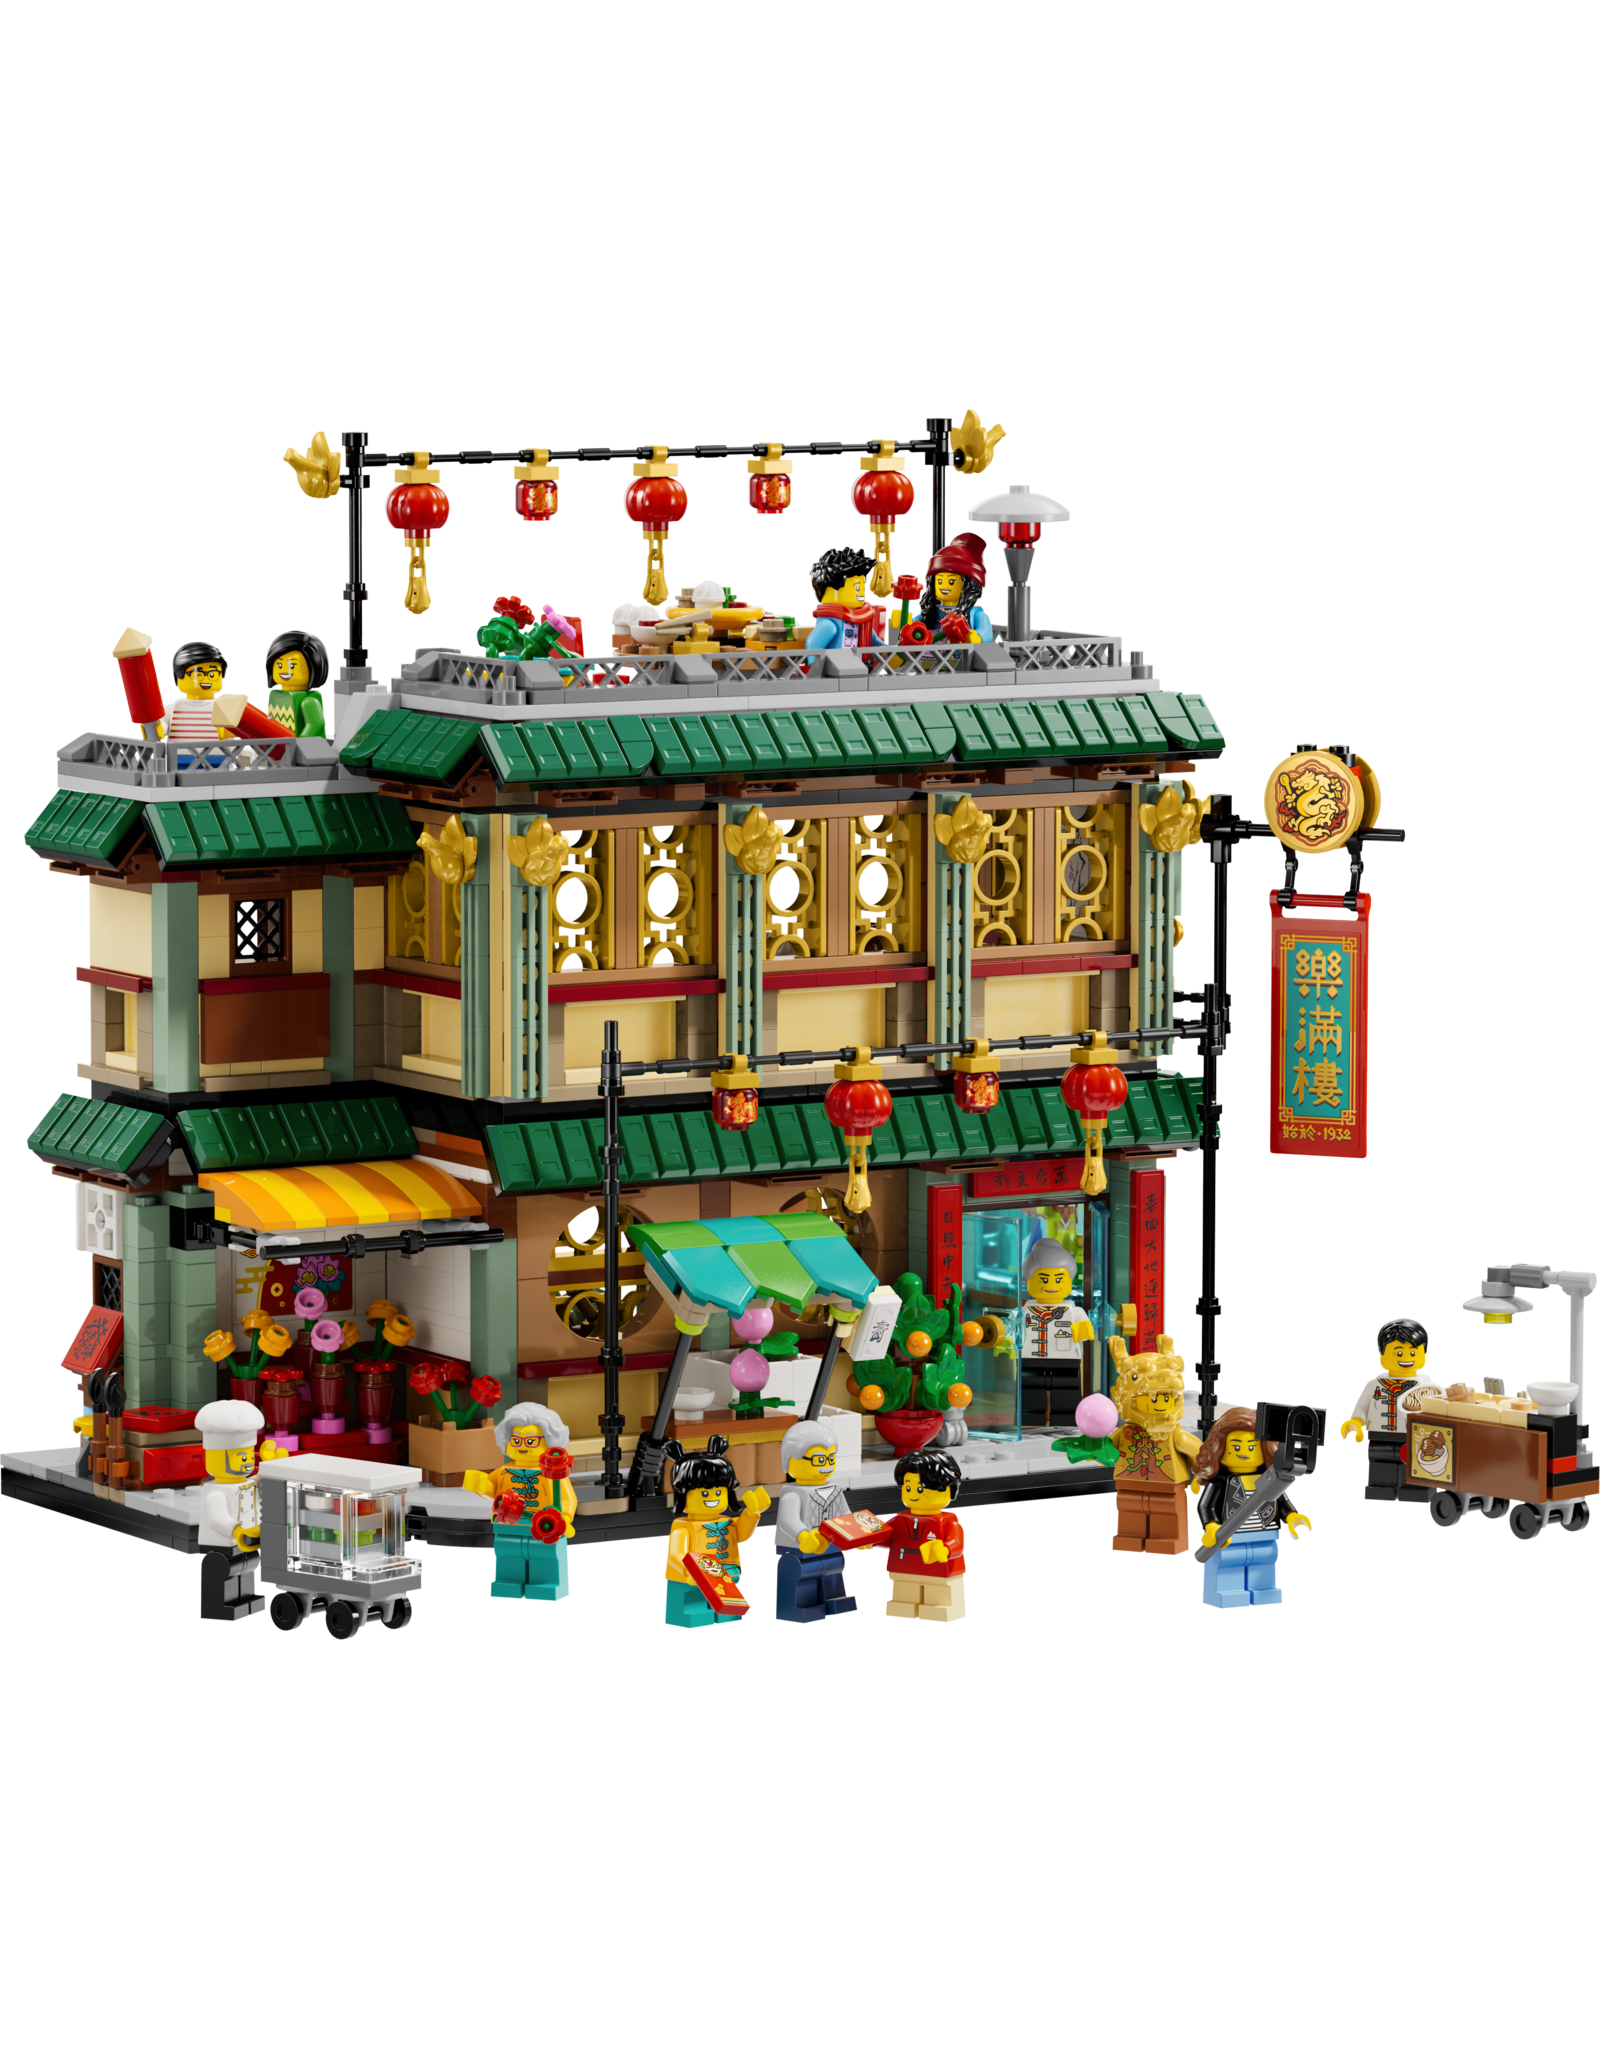 LEGO Chinese Festivals 80113 Family Reunion Celebration